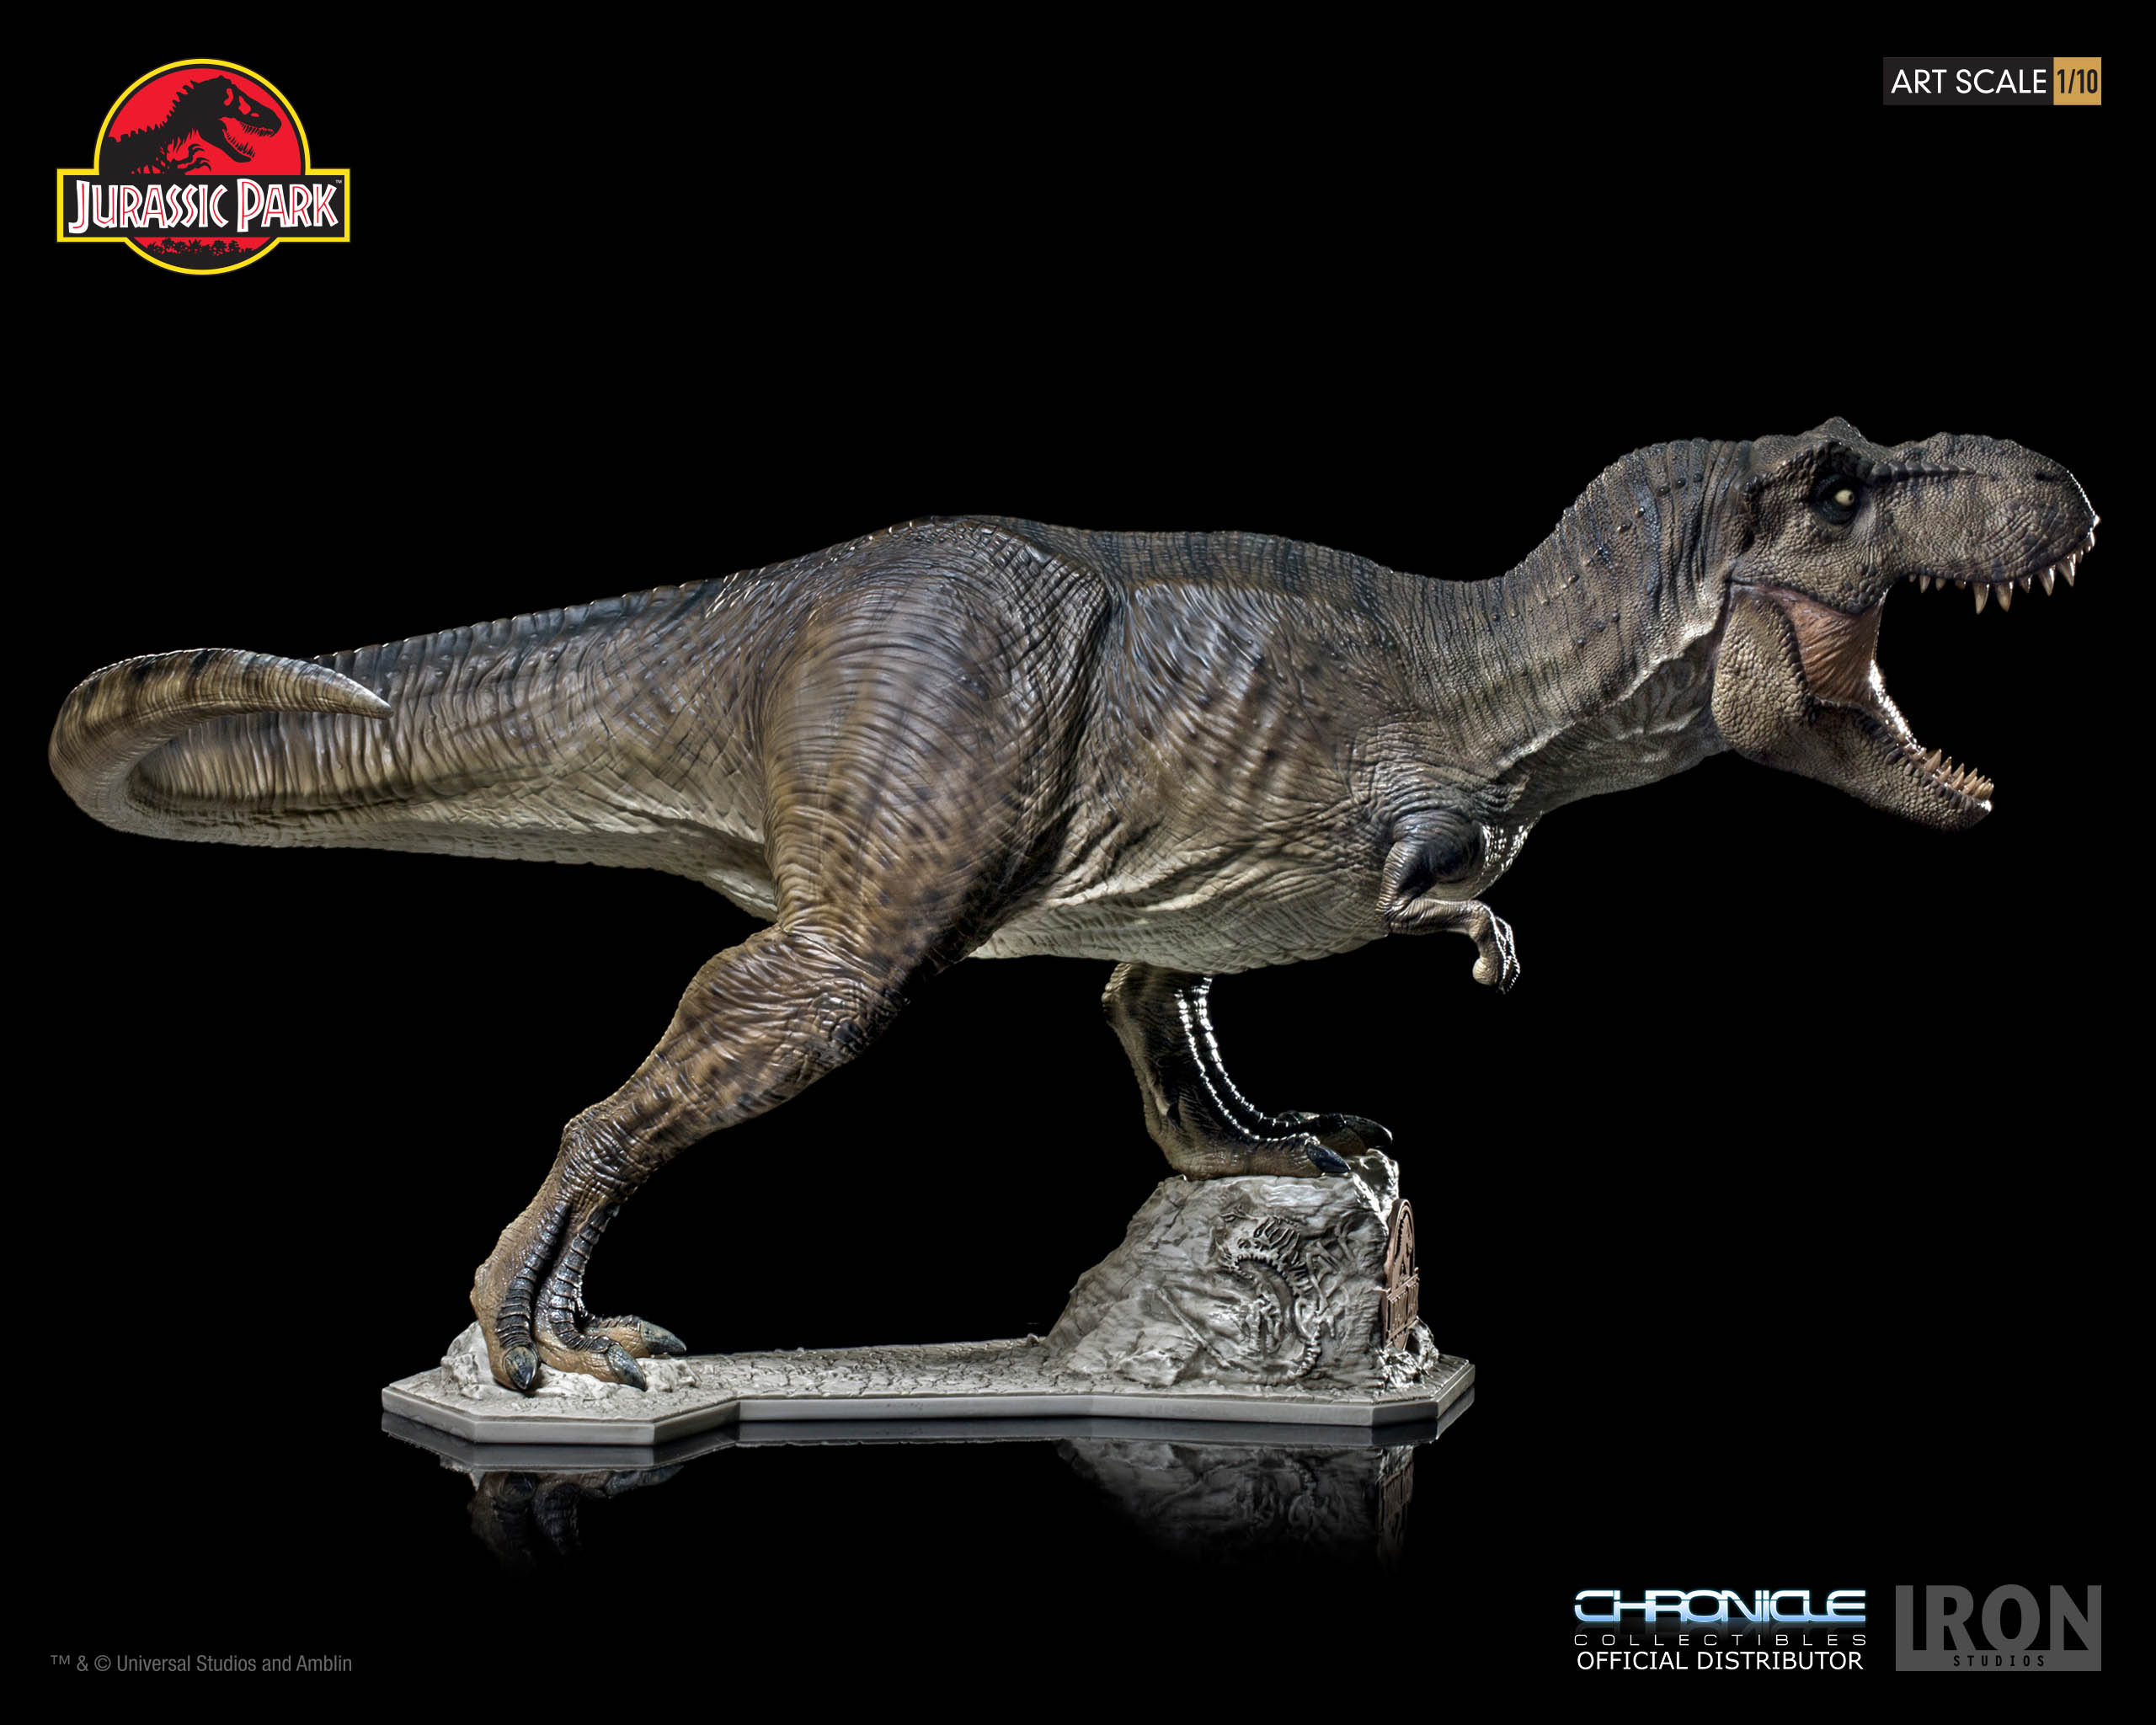 Jurassic Park & Jurassic World - Iron Studio Bg9CN6bx_o